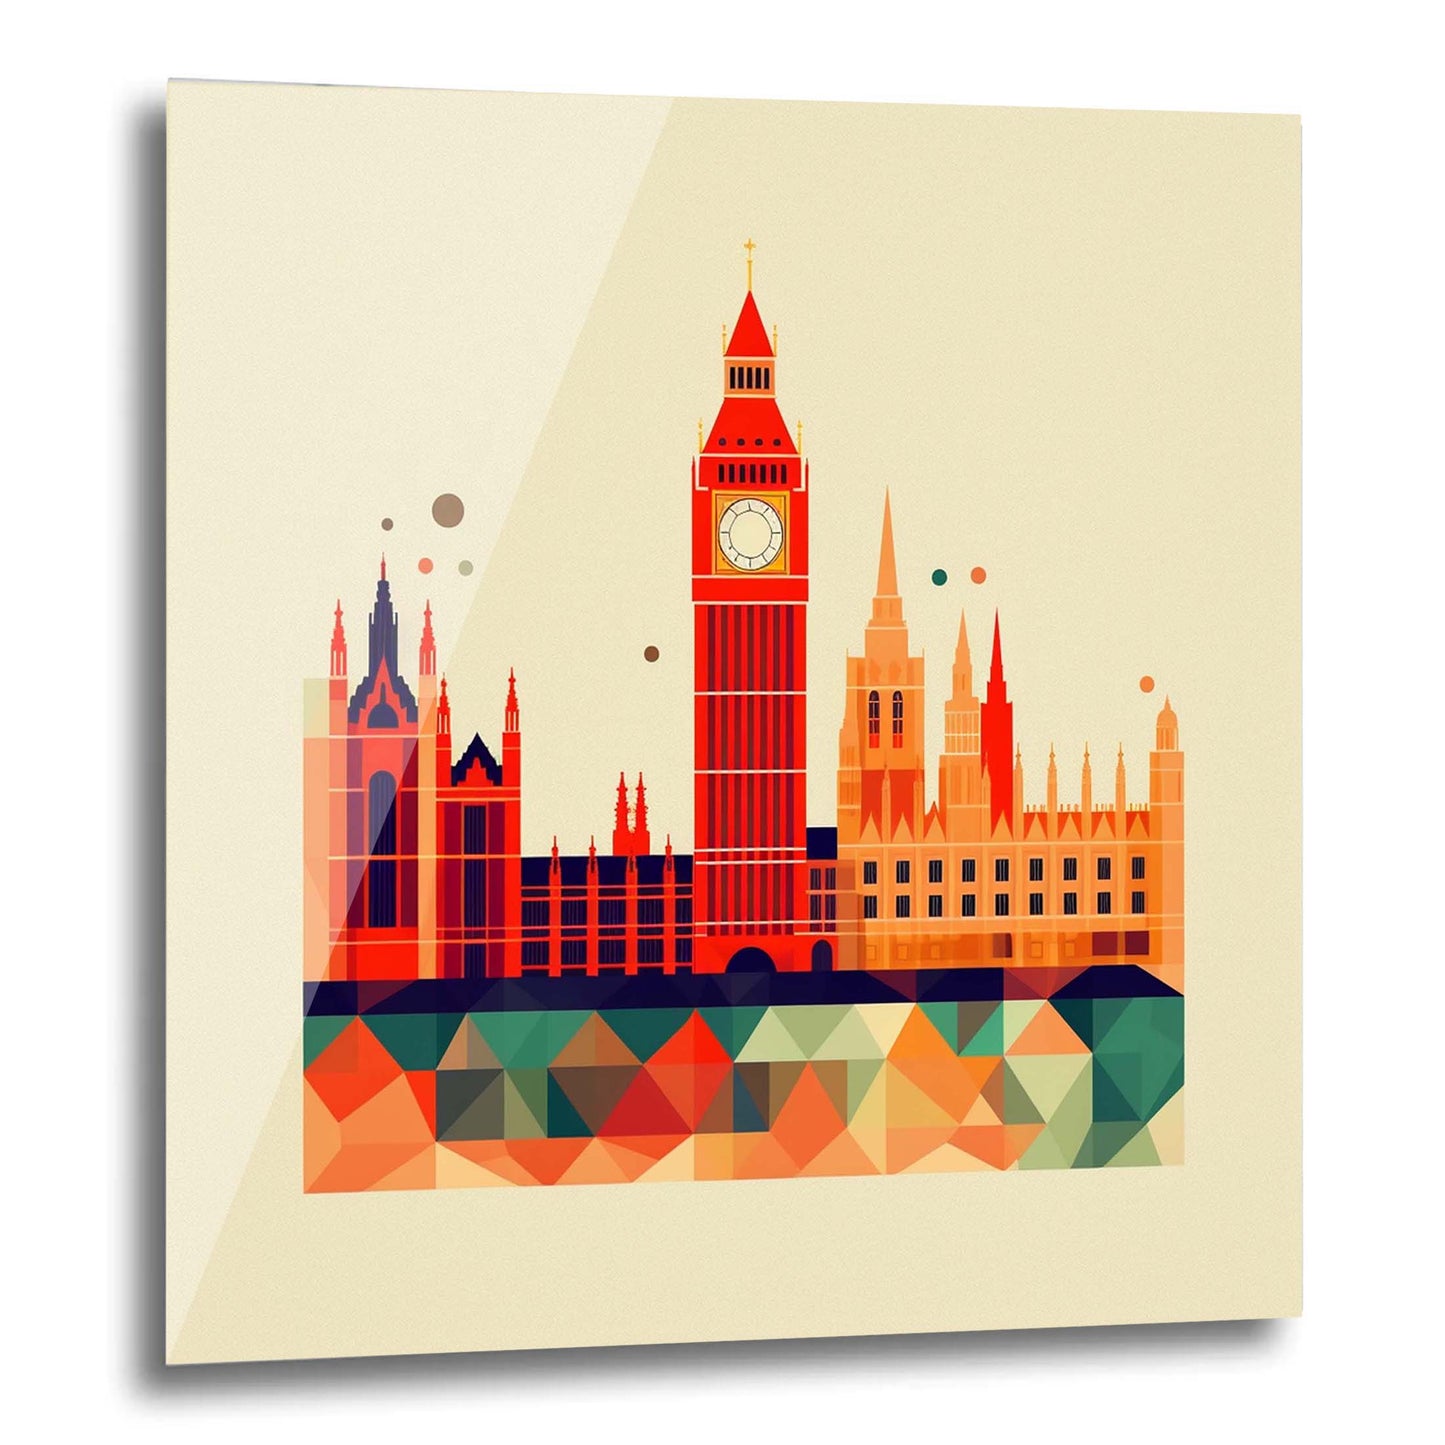 London Westminster Palace - Wandbild in der Stilrichtung des Minimalismus